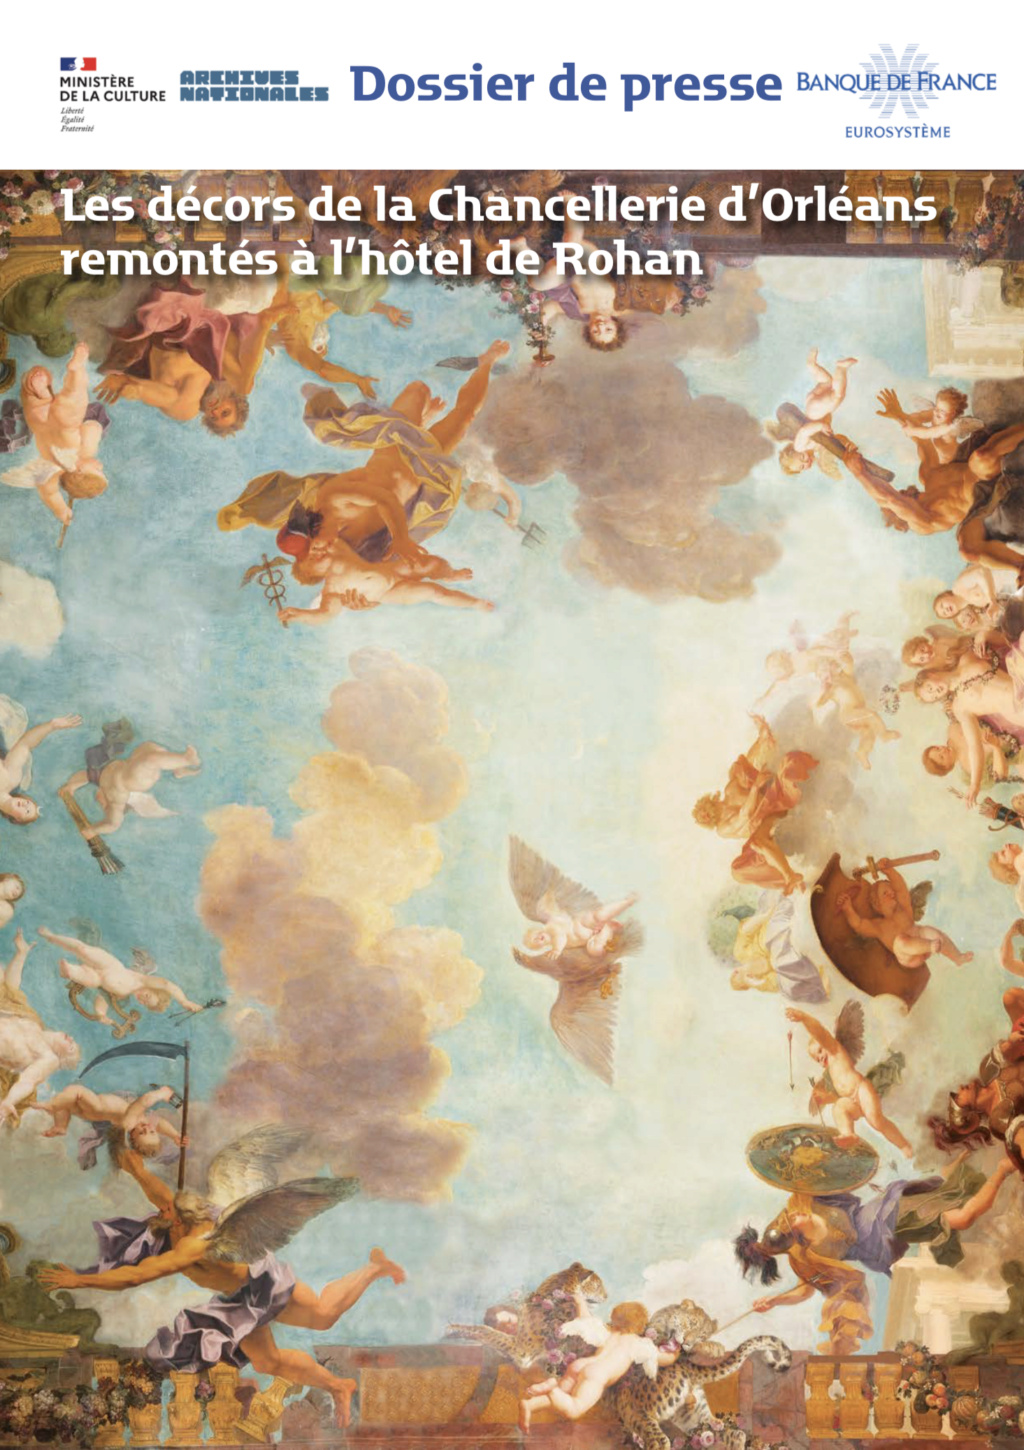 L'hôtel de Rohan (Paris), et les décors de la Chancellerie d’Orléans - Page 2 Capt3938